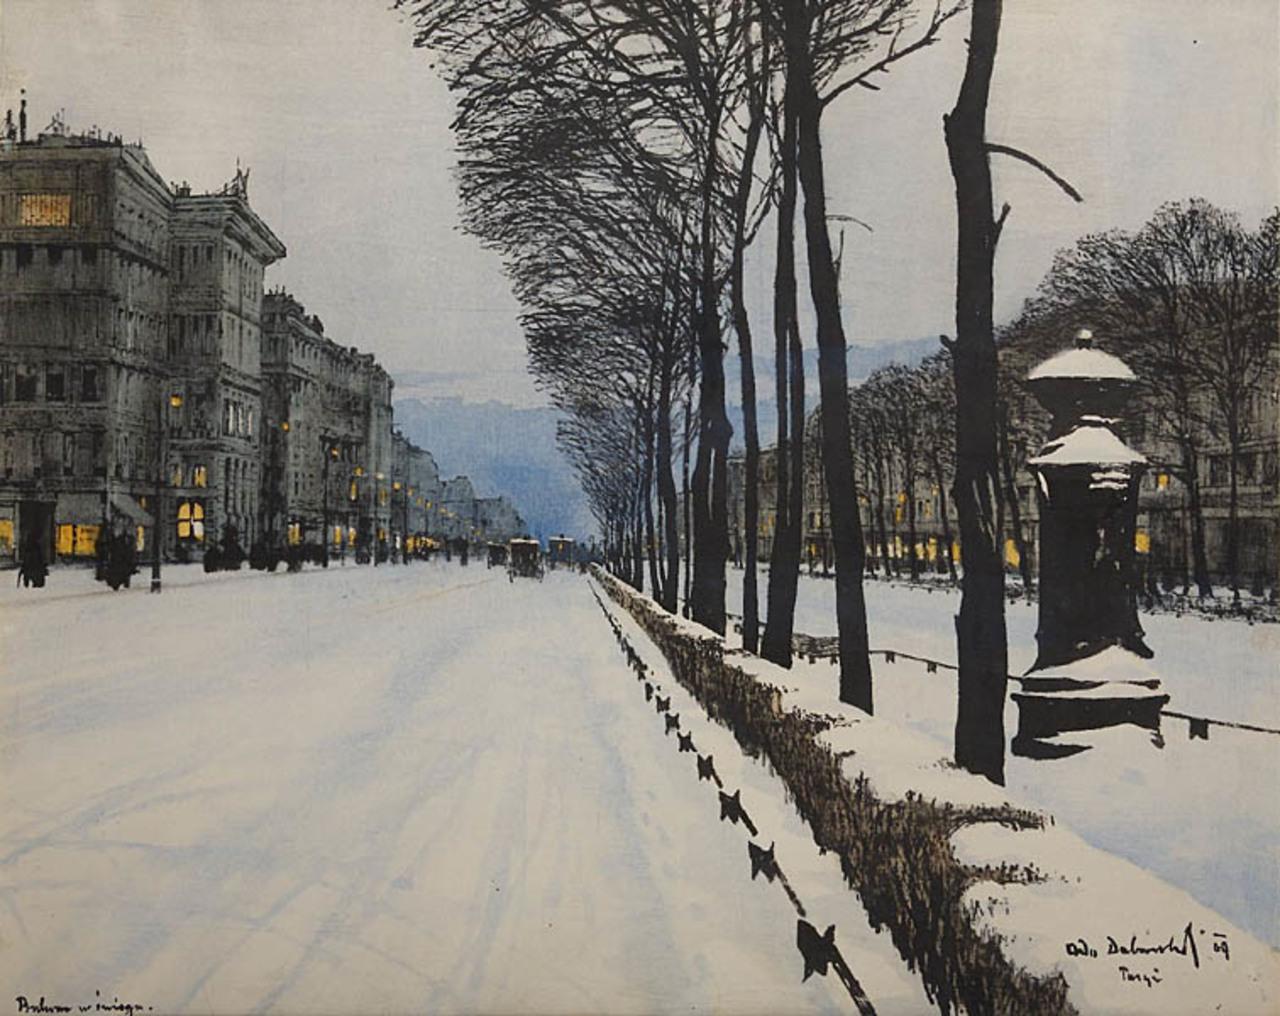 Bulwar w sniegu (Snowy boulevard (1909) by Odo Dobrowolski.jpg